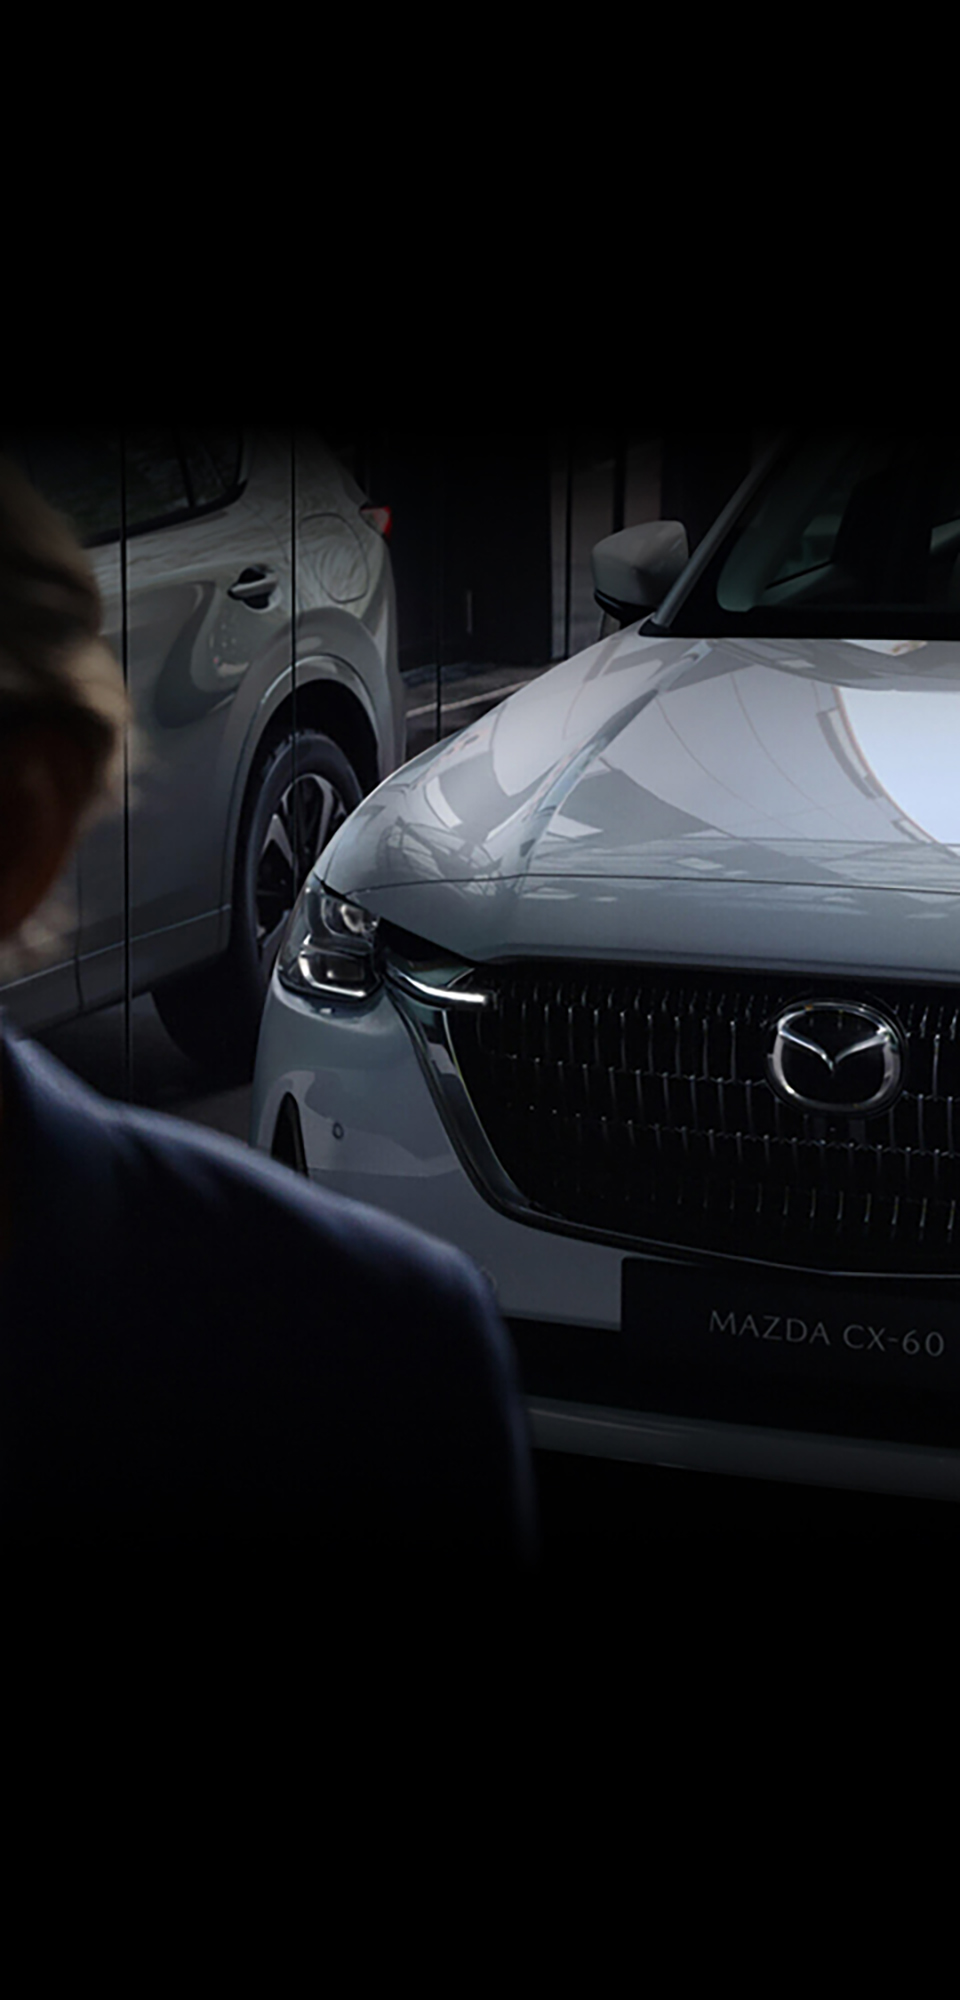 Zcela nové plug-in hybridní SUV Mazda CX-60 zobrazené zepředu, odraz ve skleněném okně.